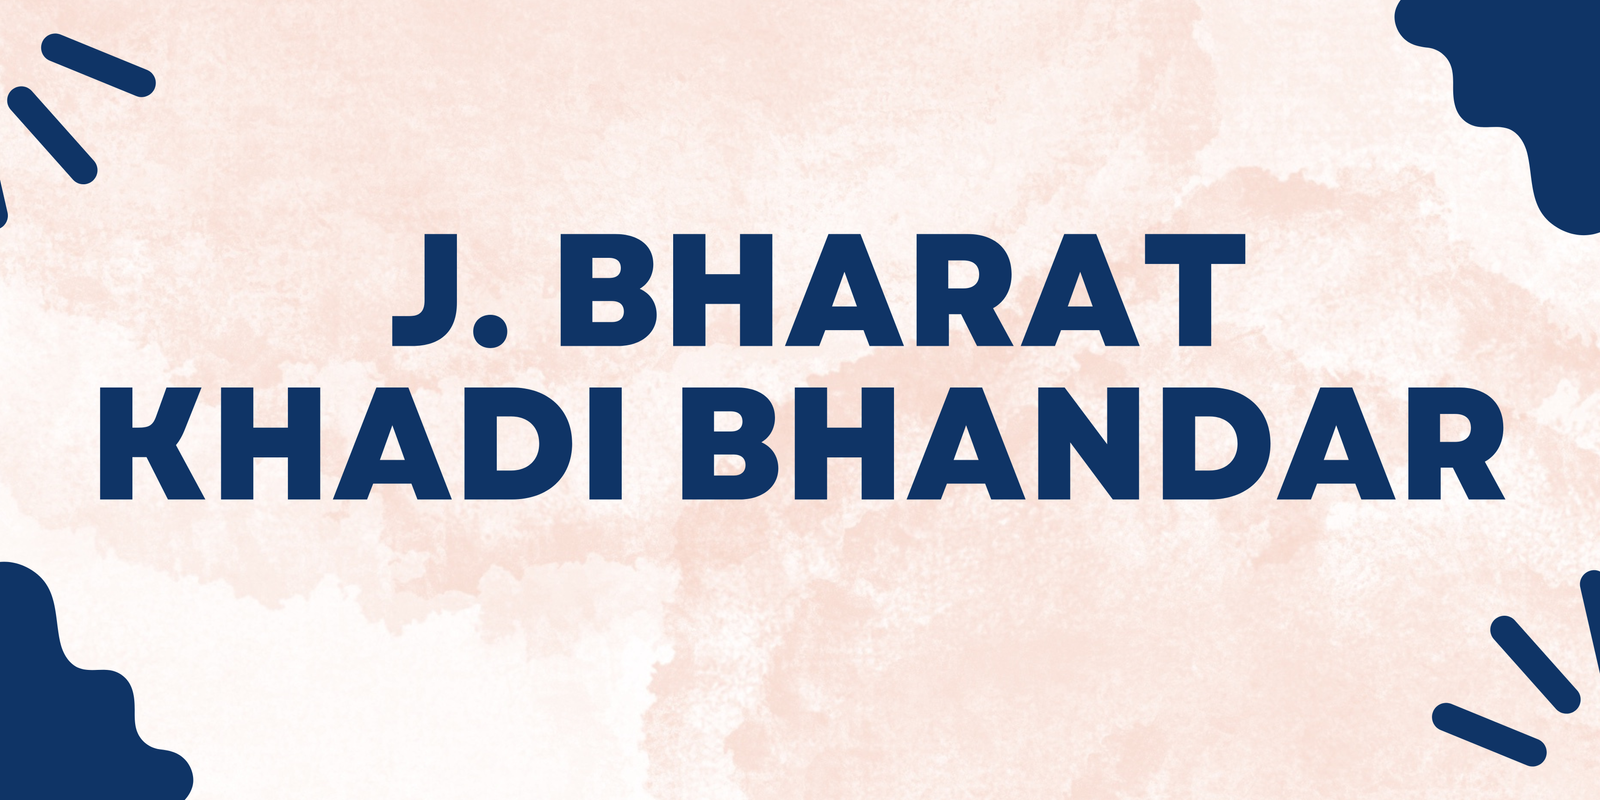 J. Bharat Khadi Bhandar